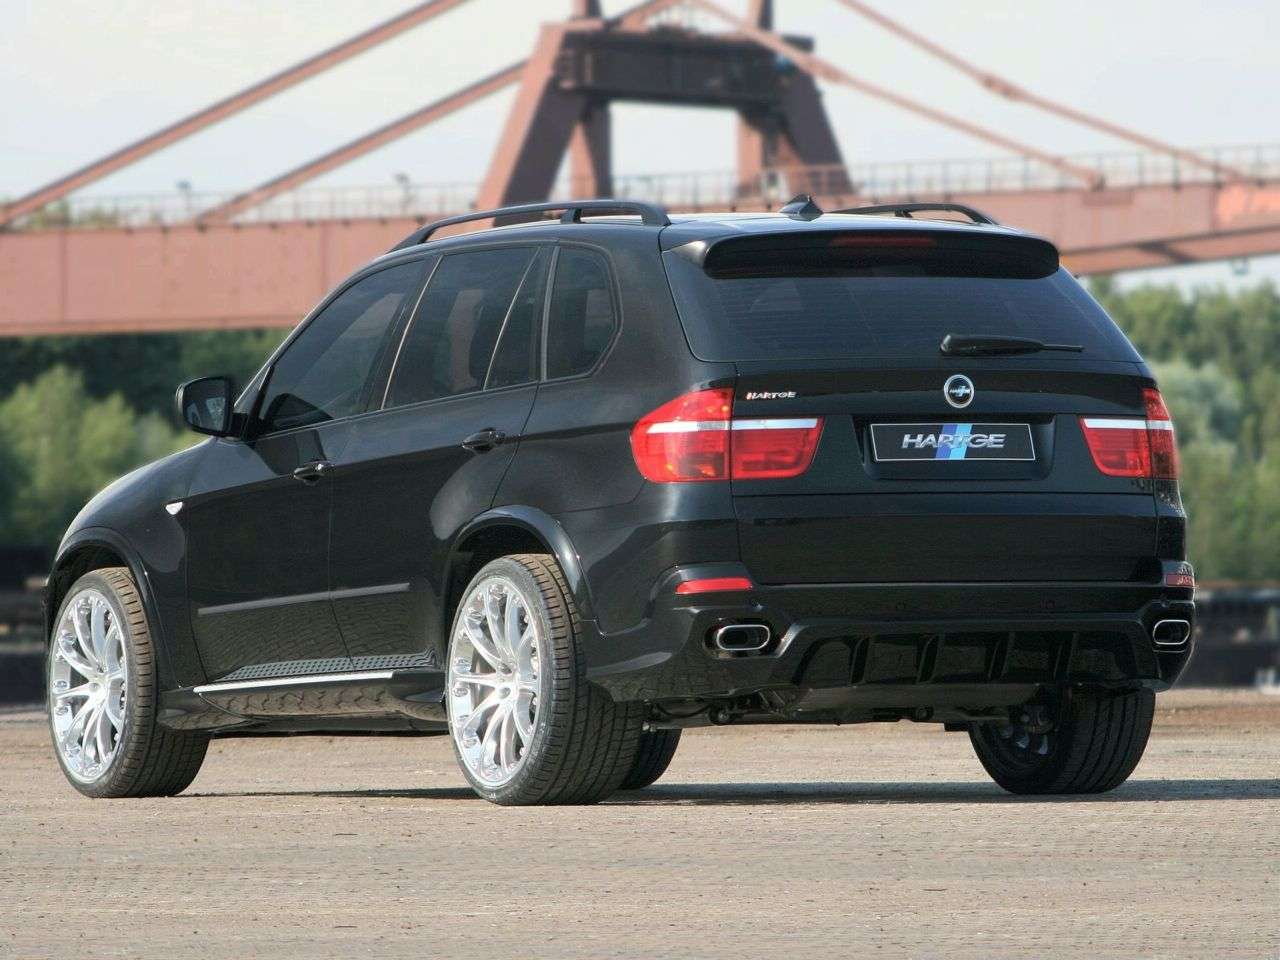 BMW X5 od Hartge 2009 2